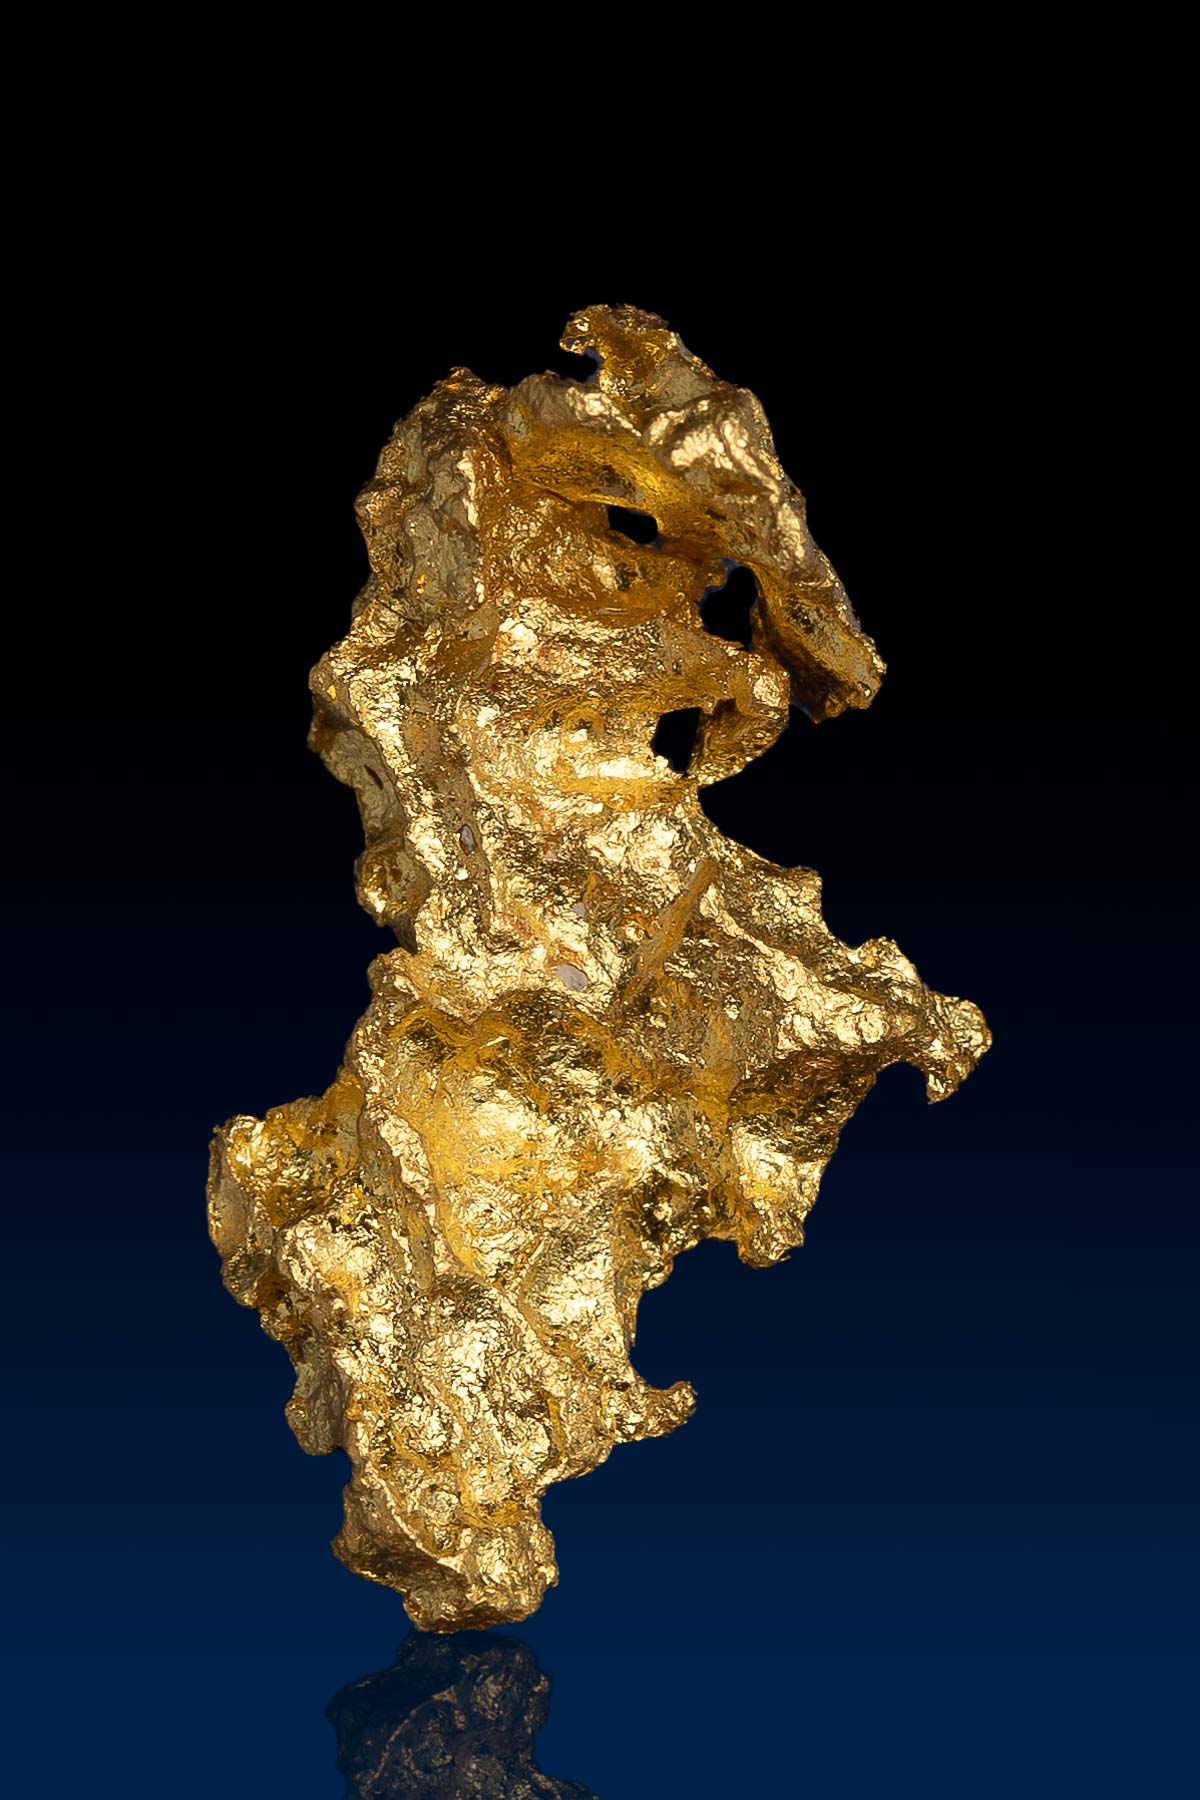 Dragon Shaped Australian Natural Gold Nugget - 2.94 grams